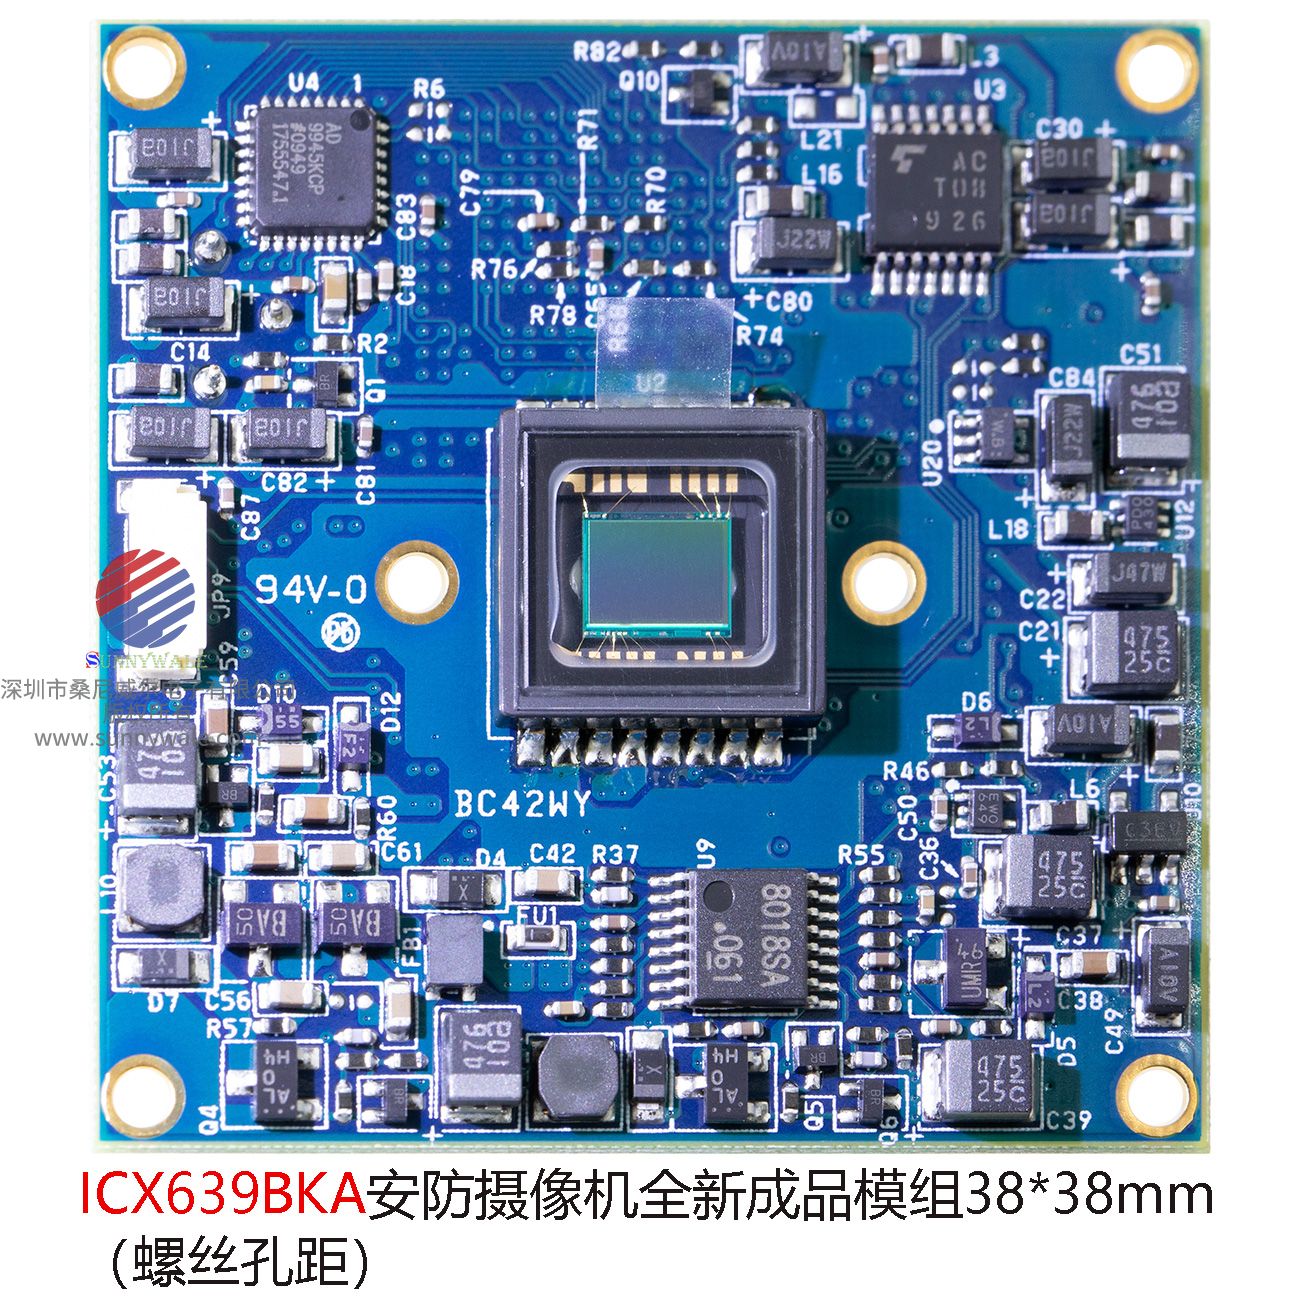 ICX639BKA，索尼SONY 1/3 CCD SENSOR，模拟安防摄像机模组，38x38mm模组，多功能摄像机模组，BC42WY摄像机成品模组，